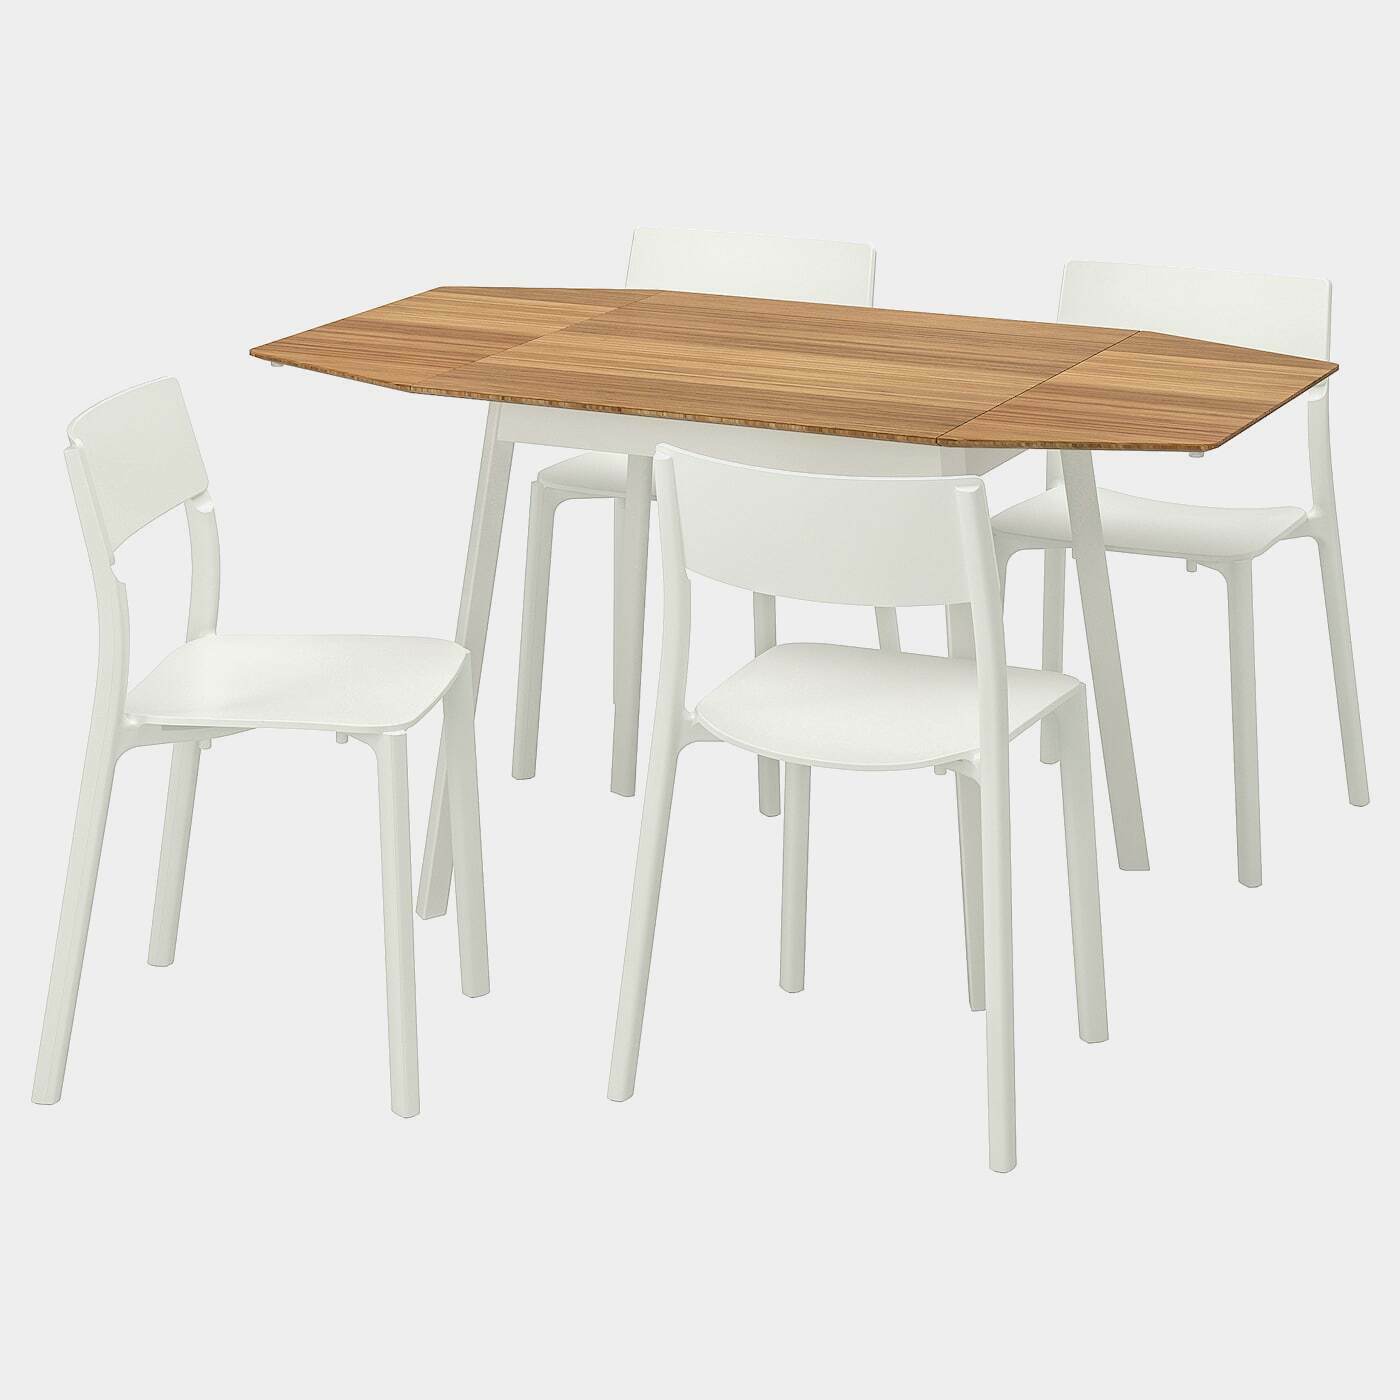 IKEA PS 2012 / JANINGE Tisch und 4 Stühle  - Essplatzgruppe - Möbel Ideen für dein Zuhause von Home Trends. Möbel Trends von Social Media Influencer für dein Skandi Zuhause.